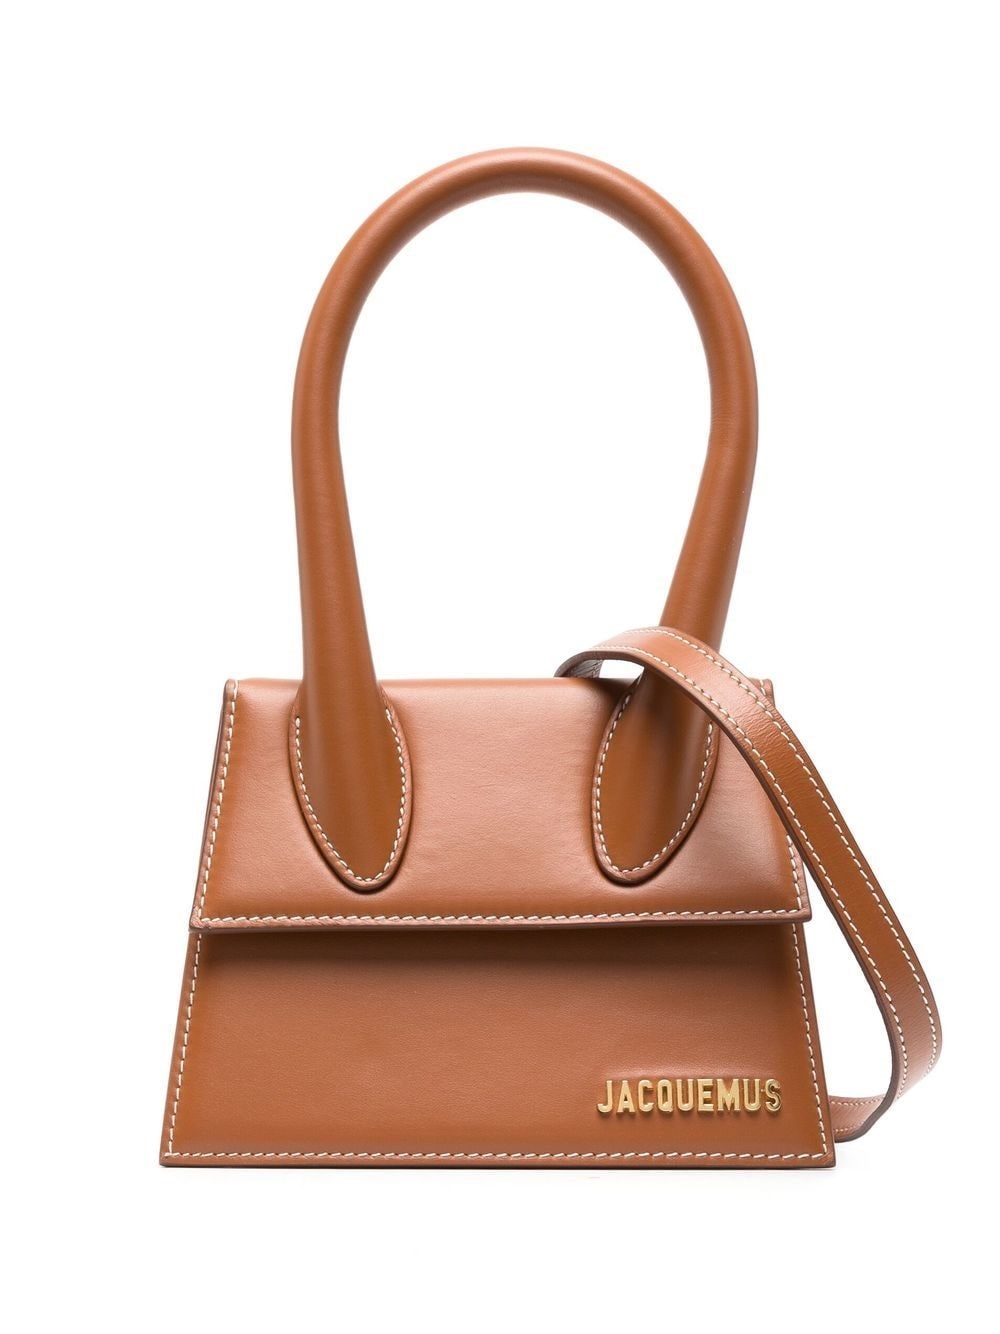 Where to Buy Jacquemus Mini Le Petit Chiquito Bag